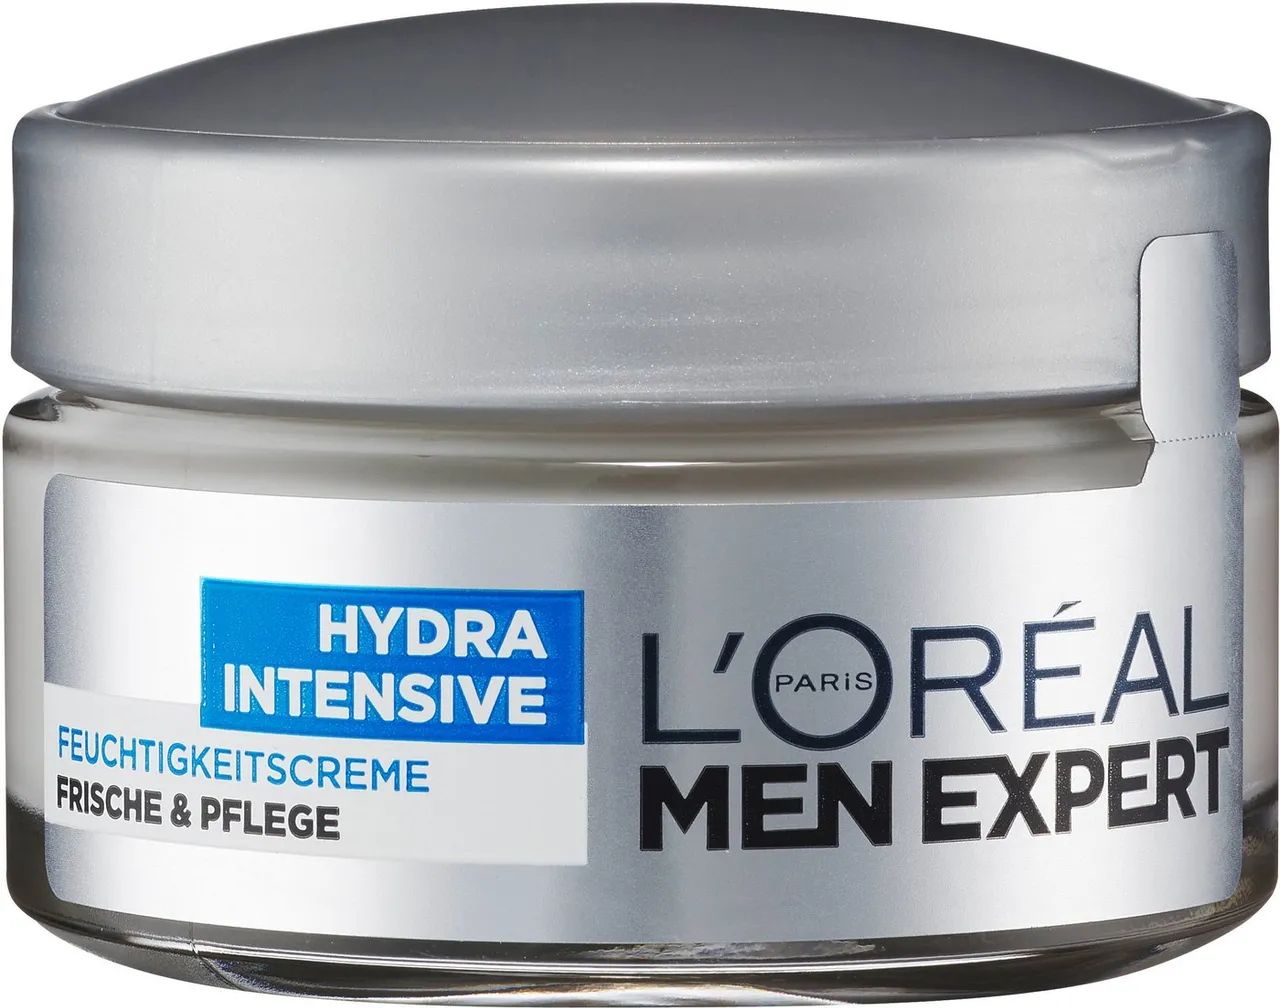 L'ORÉAL PARIS MEN EXPERT Feuchtigkeitscreme Hydra Intensive, für sensible Männerhaut, zieht schnell, ohne fetten ein